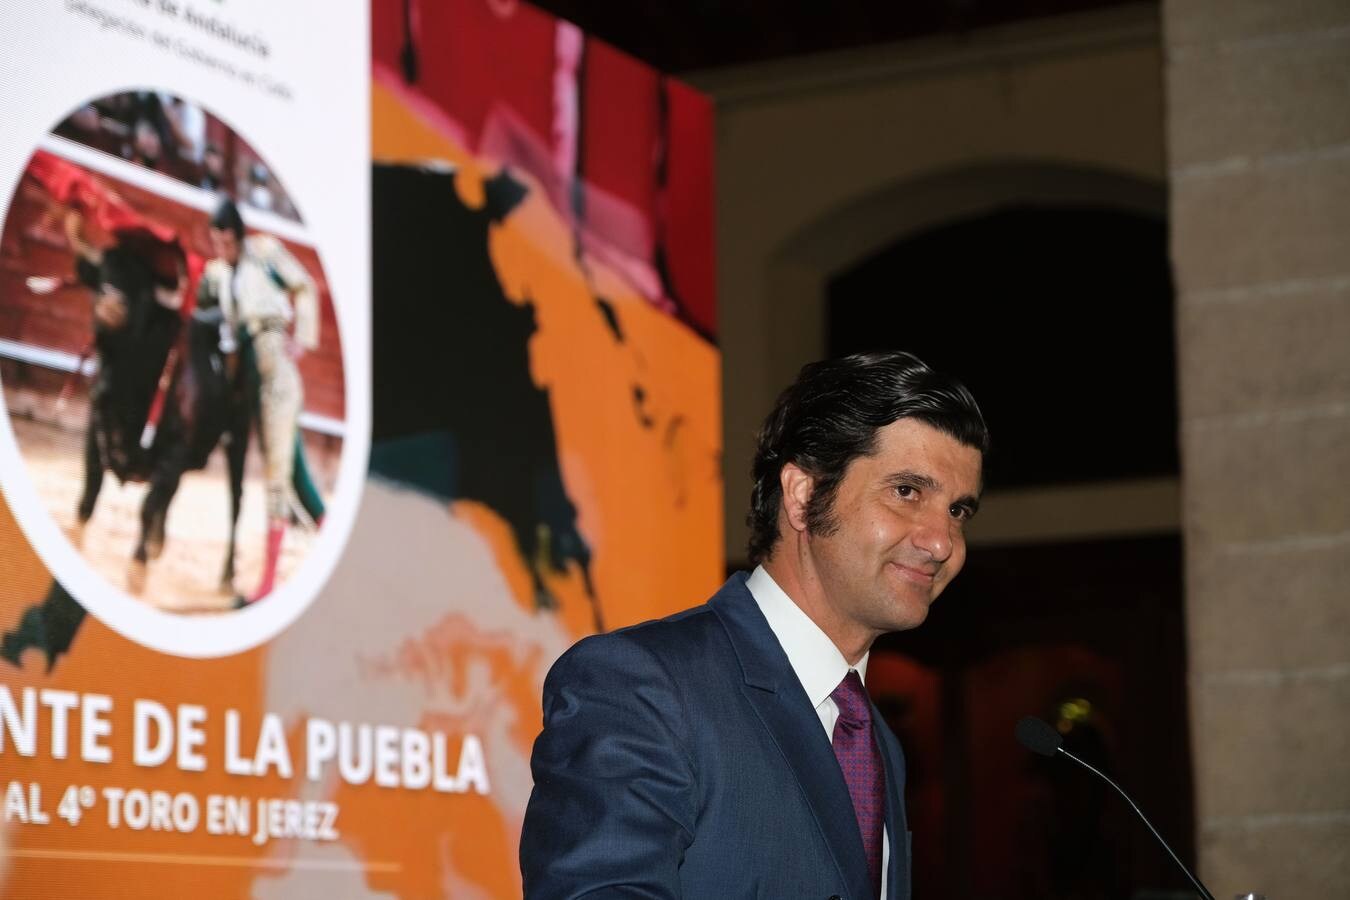 FOTOS: La Junta entrega los Premios Taurinos en la Real Escuela Andaluza del Arte Ecuestre de Jerez